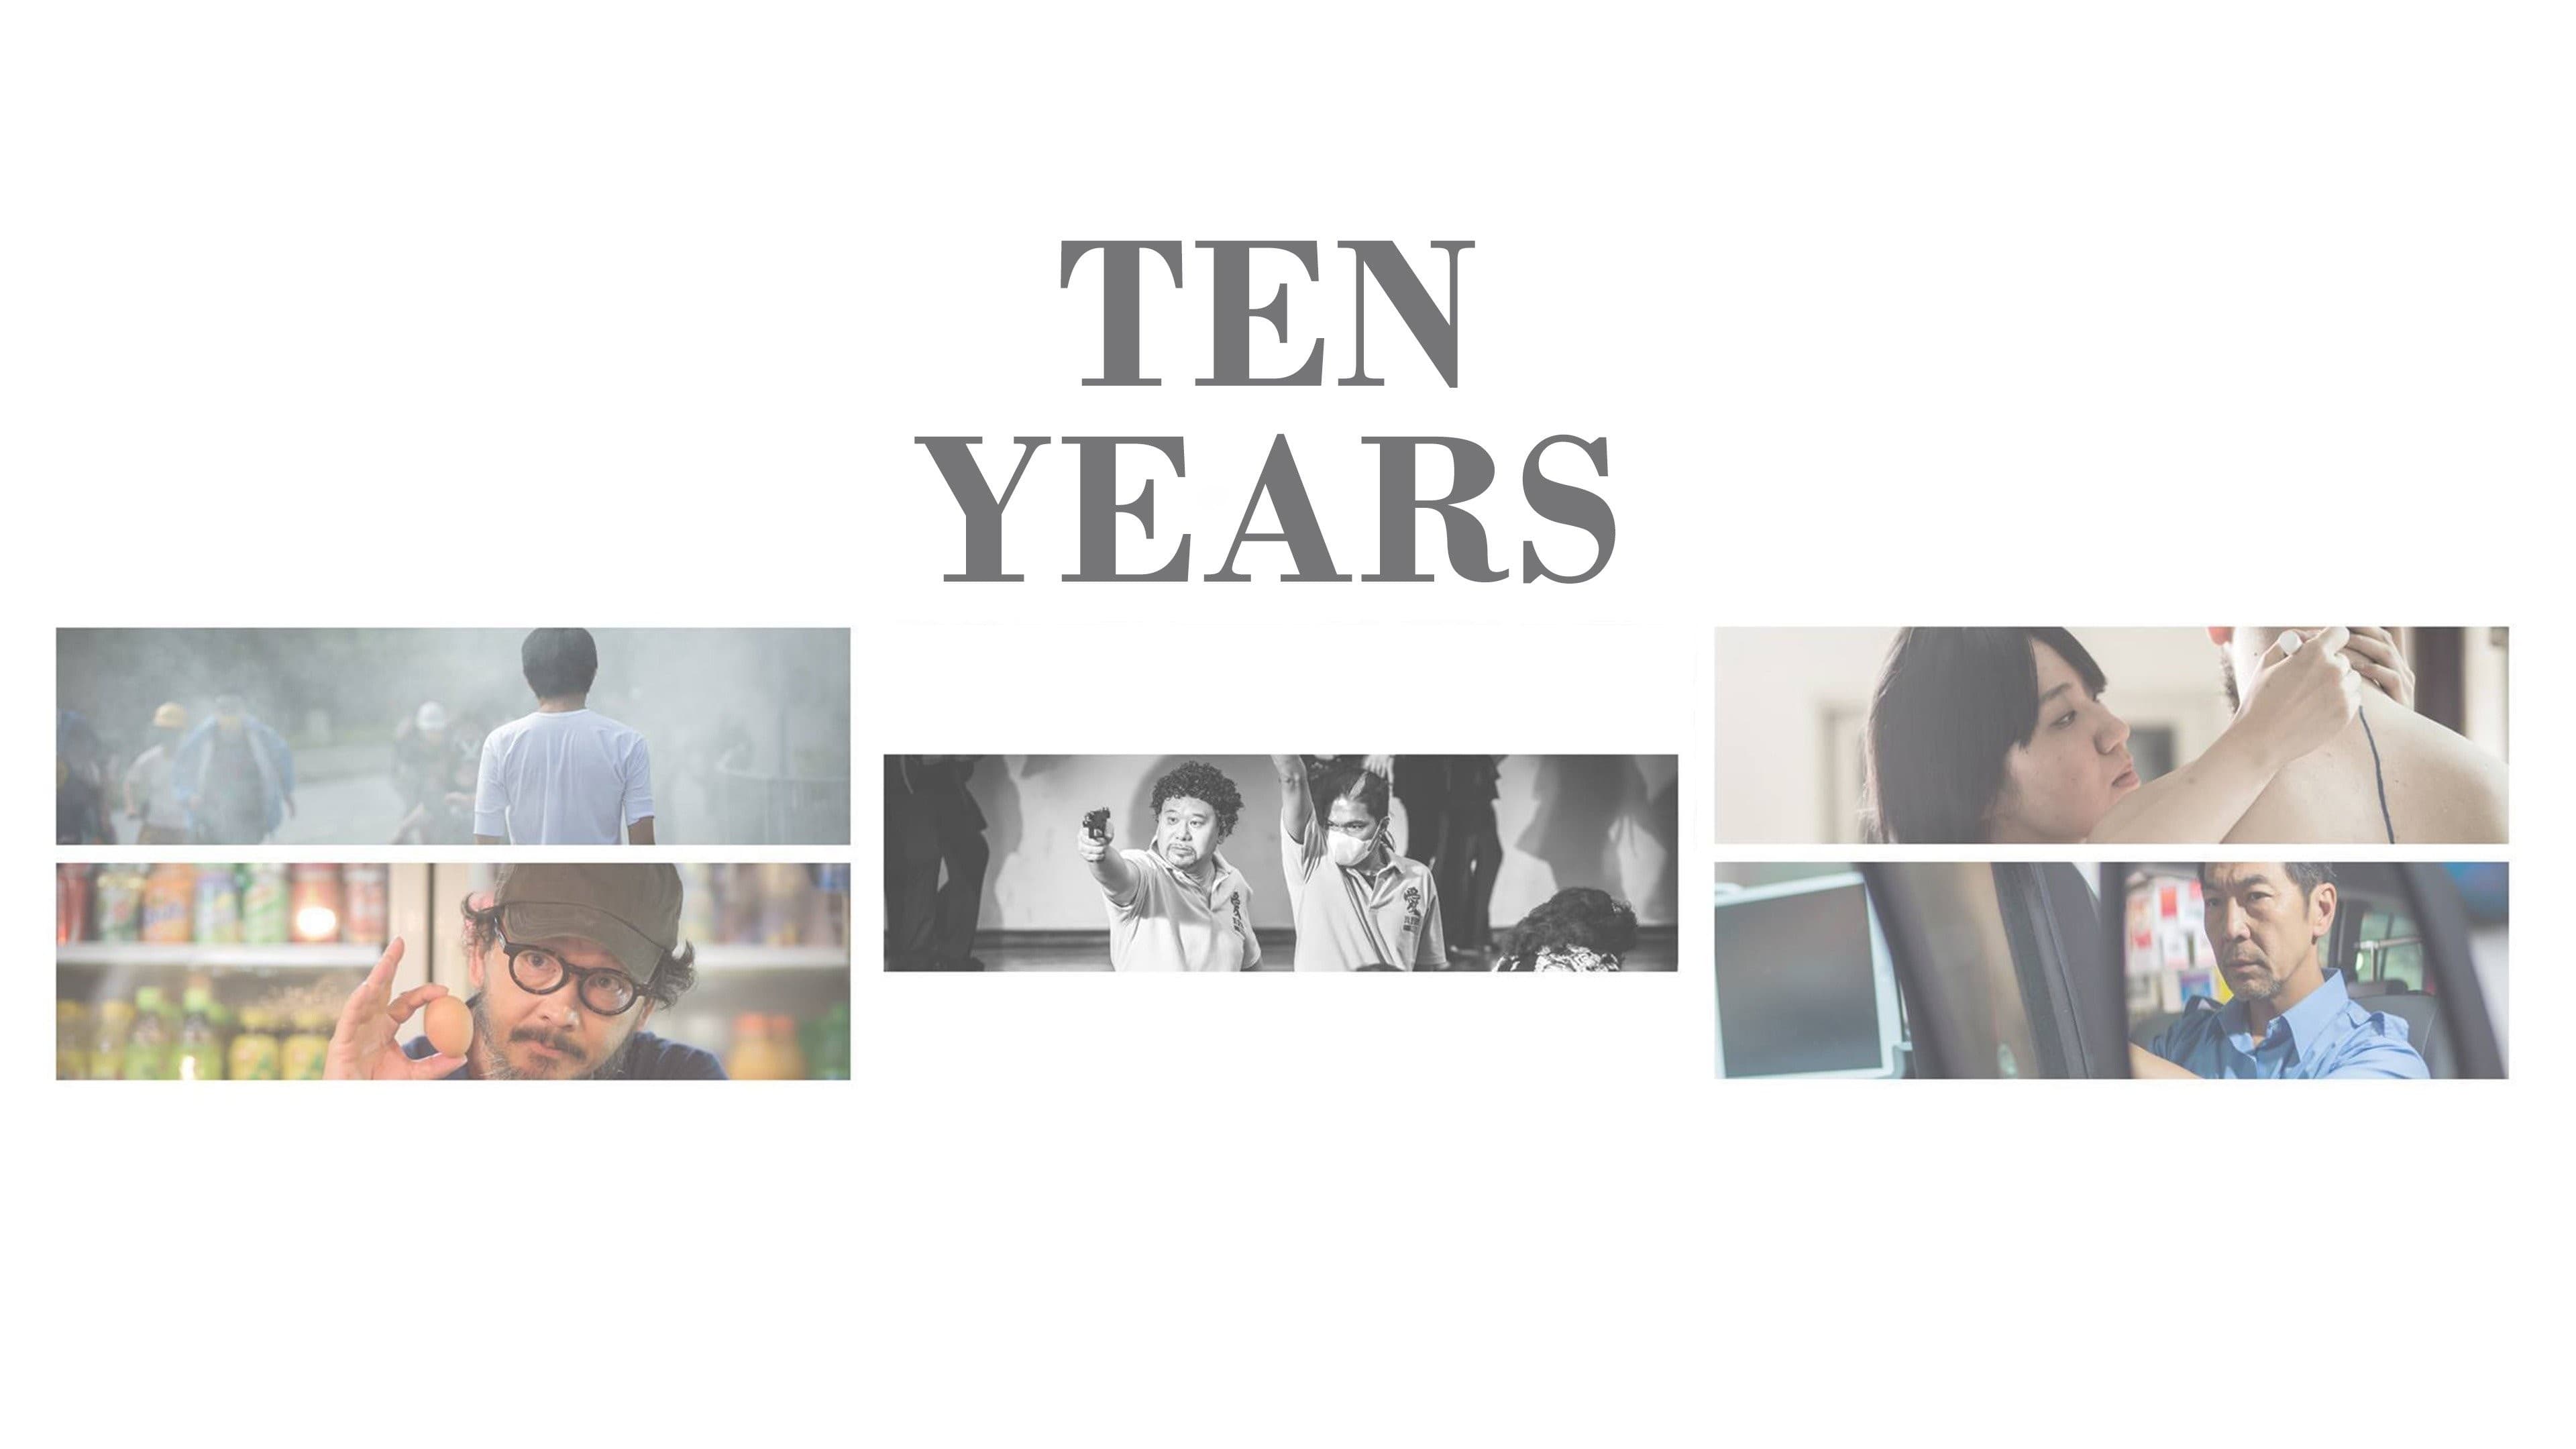 Ten Years